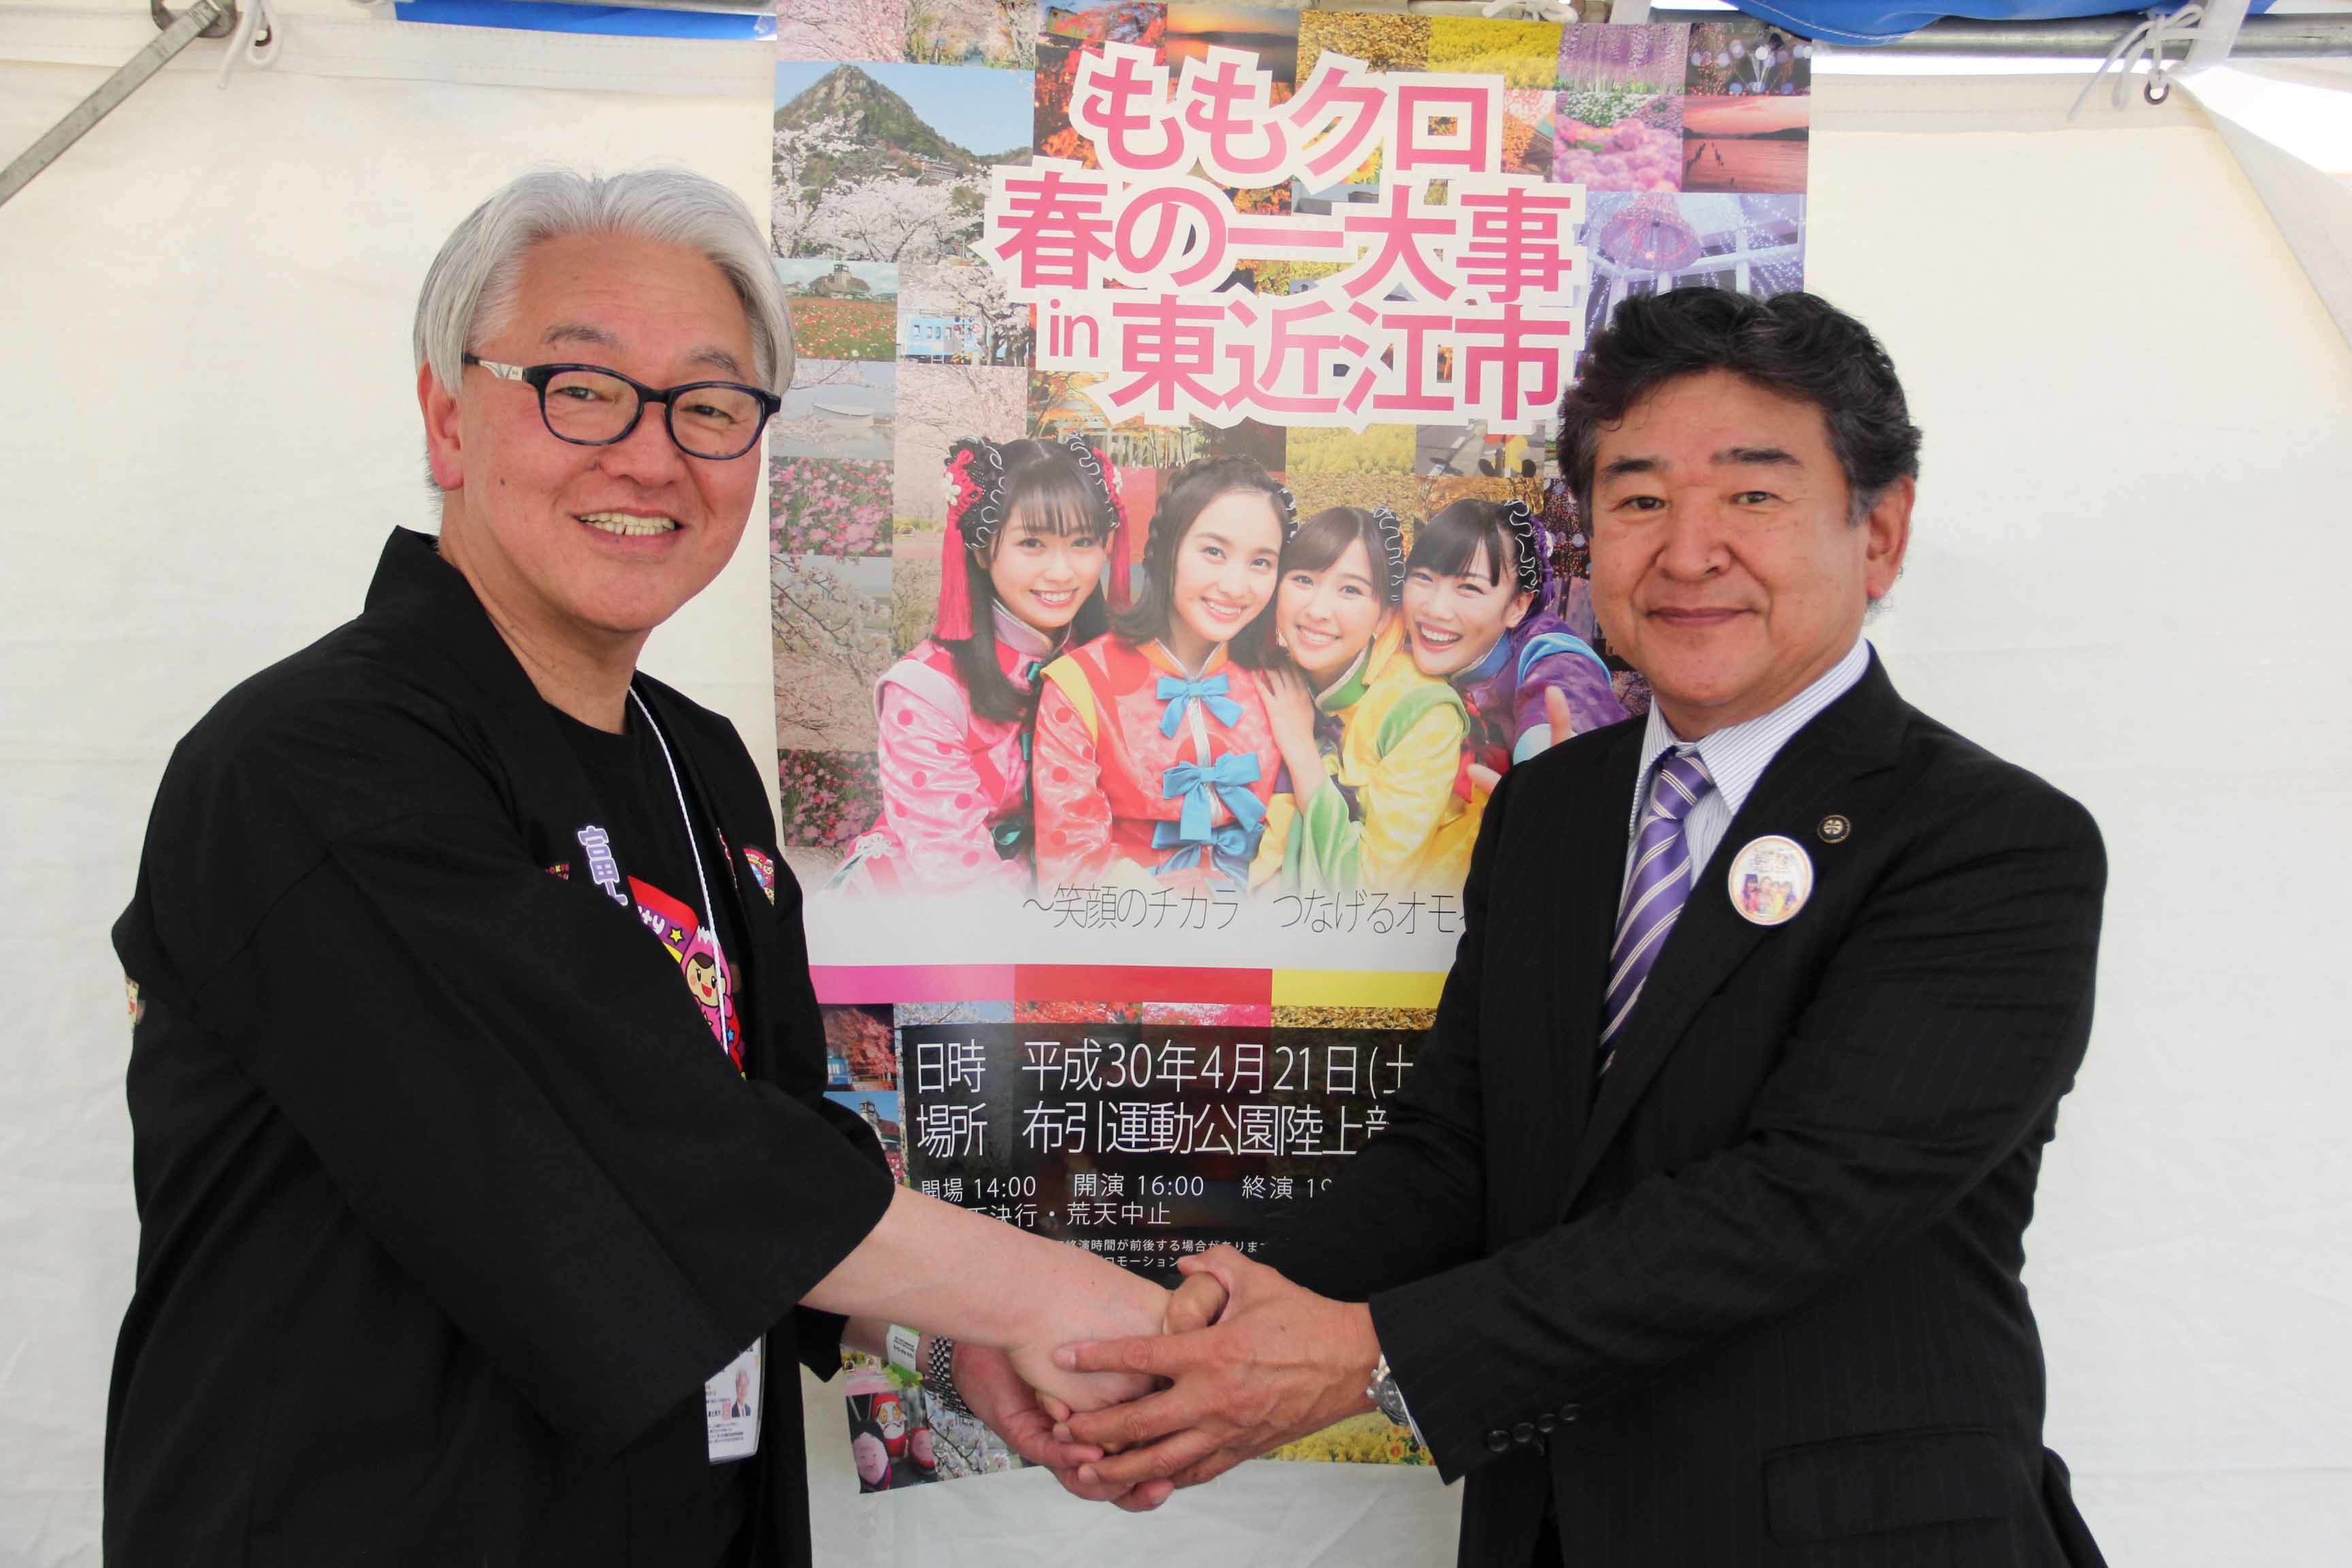 握手を交わす富士見市長（左）と小椋市長（右）